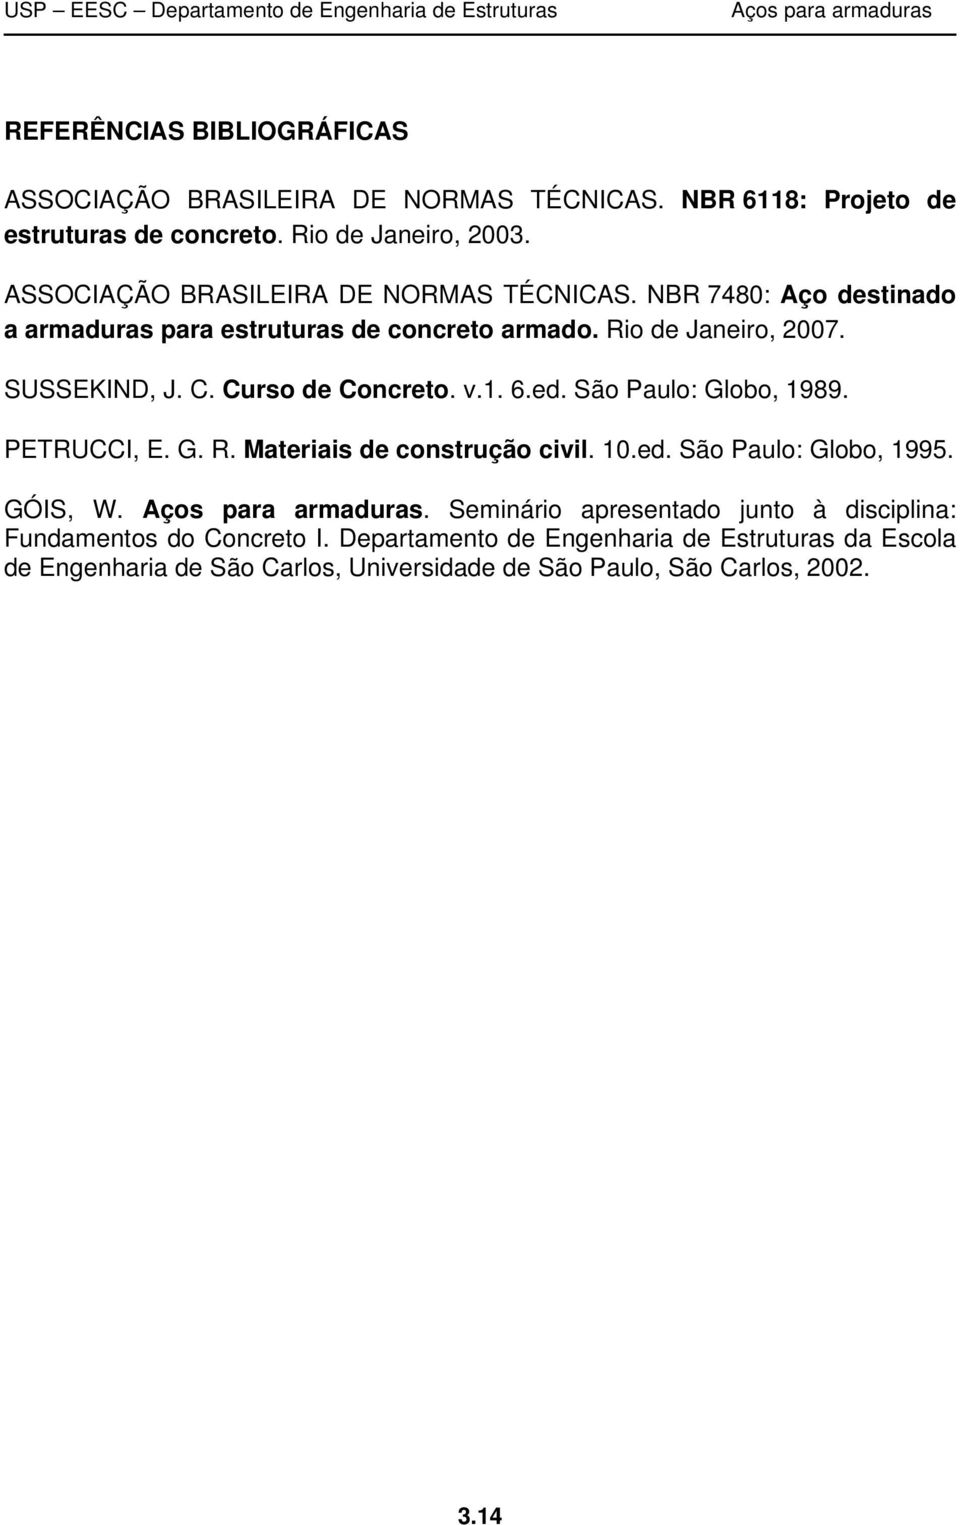 Curso de Concreto. v.1. 6.ed. São Paulo: Globo, 1989. PETRUCCI, E. G. R. Materiais de construção civil. 10.ed. São Paulo: Globo, 1995. GÓIS, W.